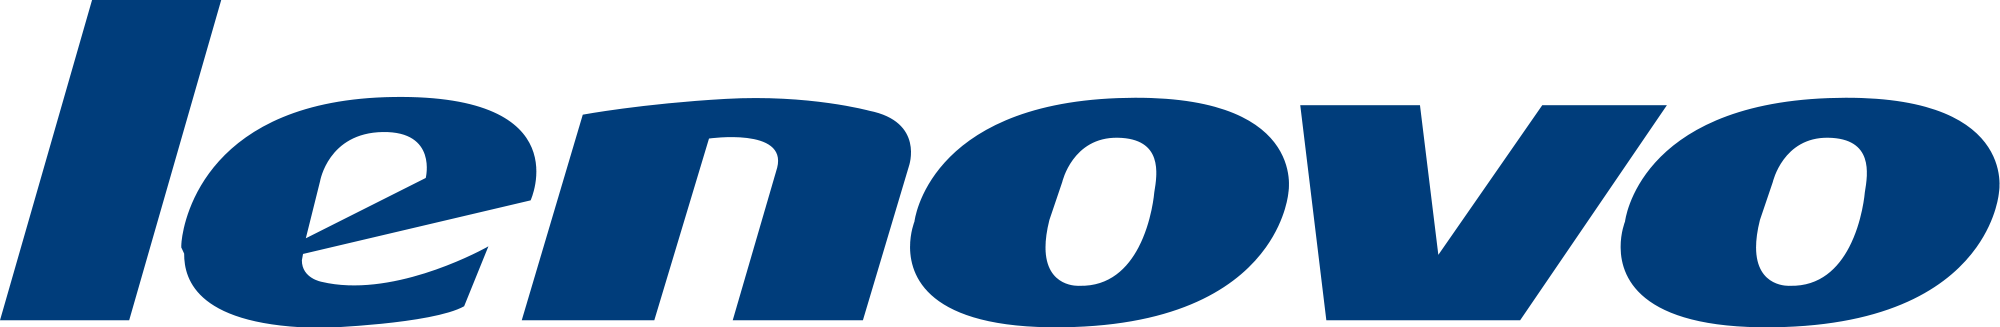 Lenovo Logo Photos PNG Image